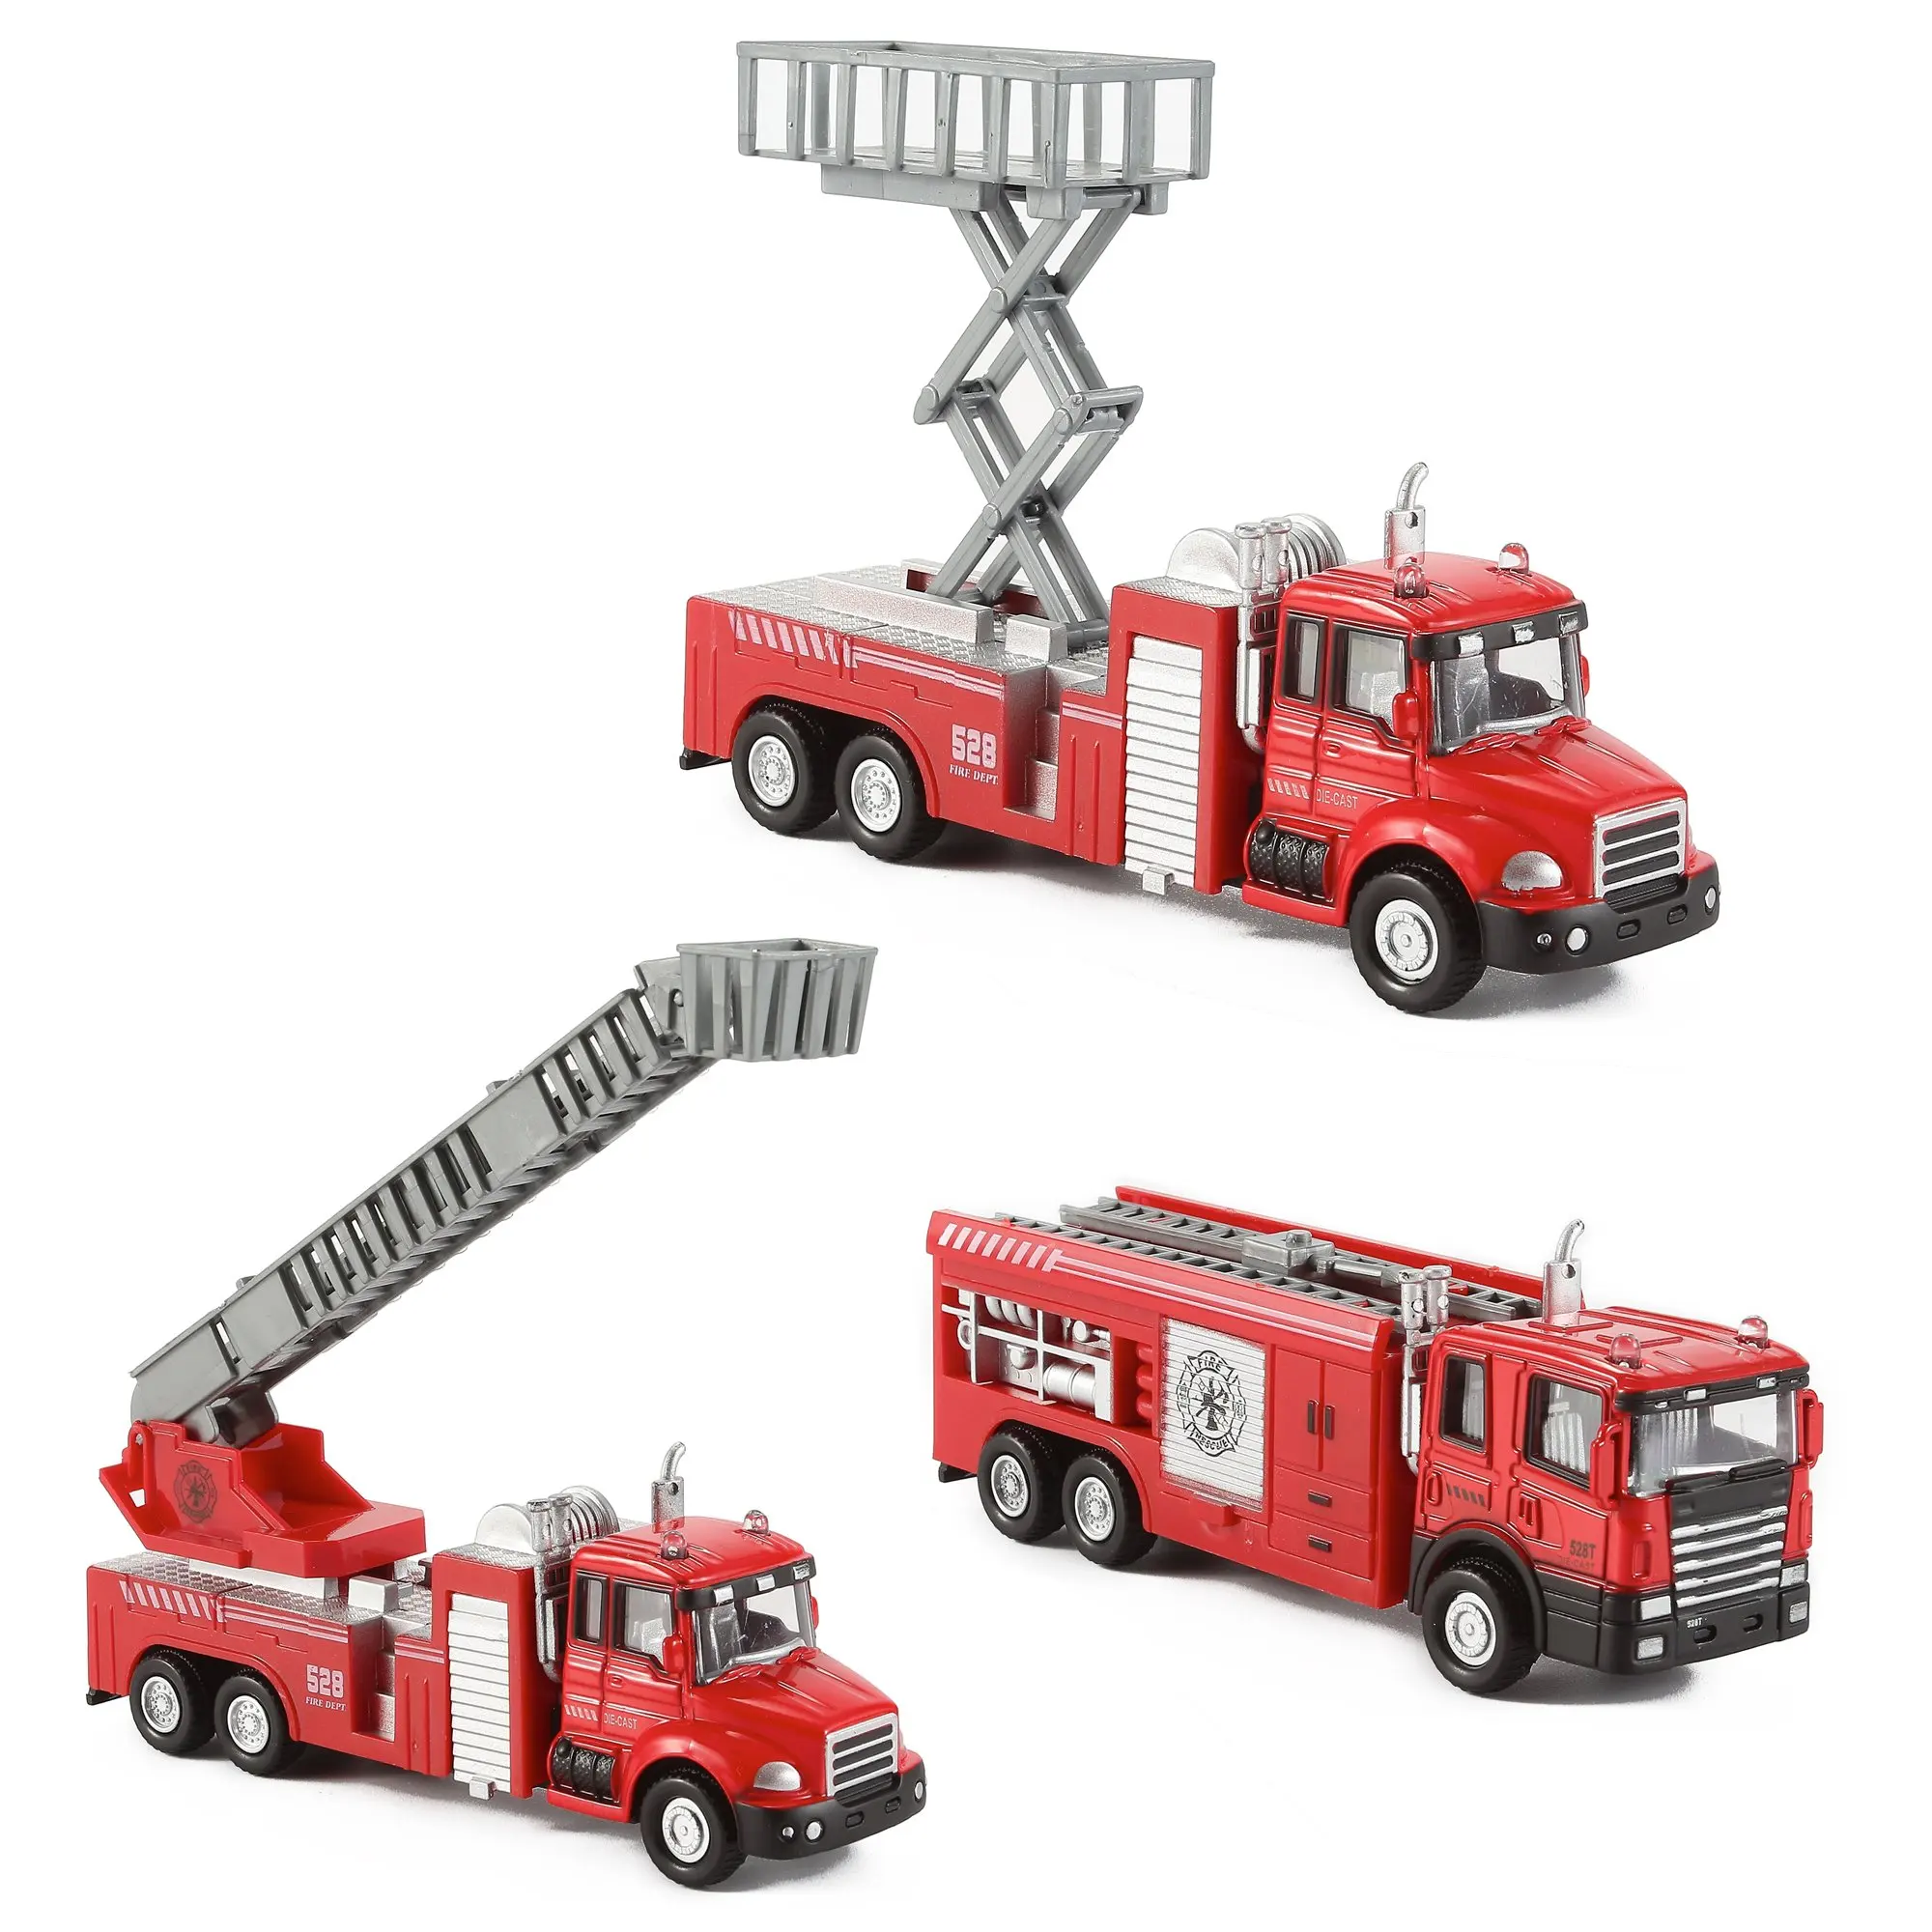 Машинки пожарная машина. Конструктор Boyuan Toys 8755 пожарная машина. Пожарная машина Metz игрушка. Matchbox пожарная машина трансформер. Пожарная машинка (20 см) Fire-Fighting vehicle.